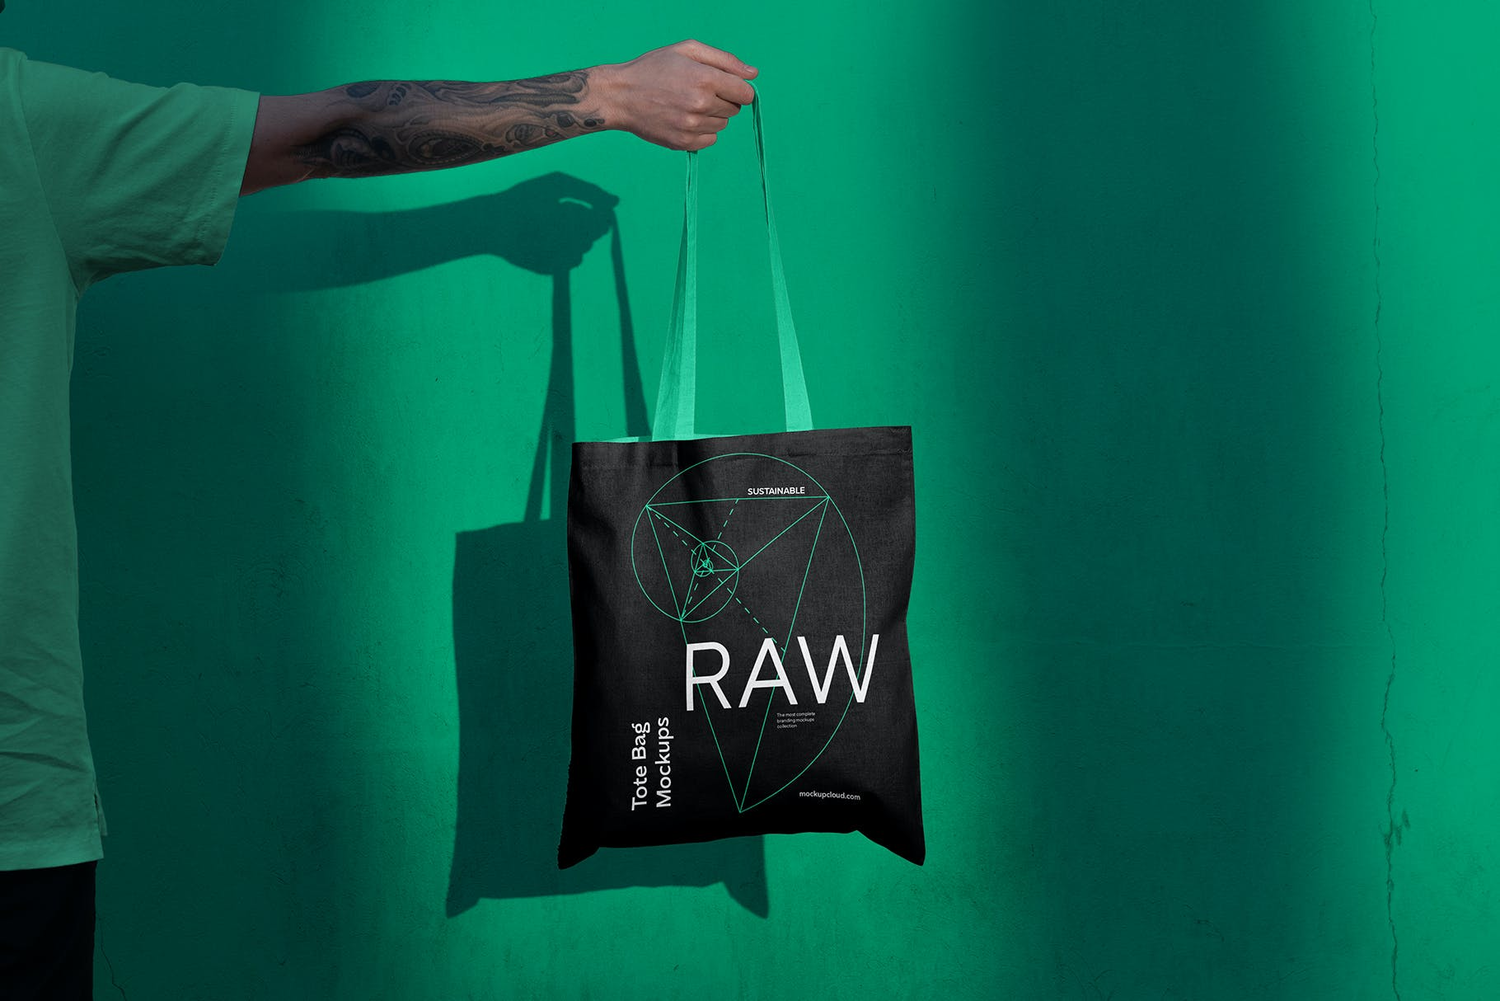 4731 10款工业风质感光影帆布包环保袋拎袋设计作品贴图ps样机素材模板 Raw Tote Bag Mockups@GOOODME.COM